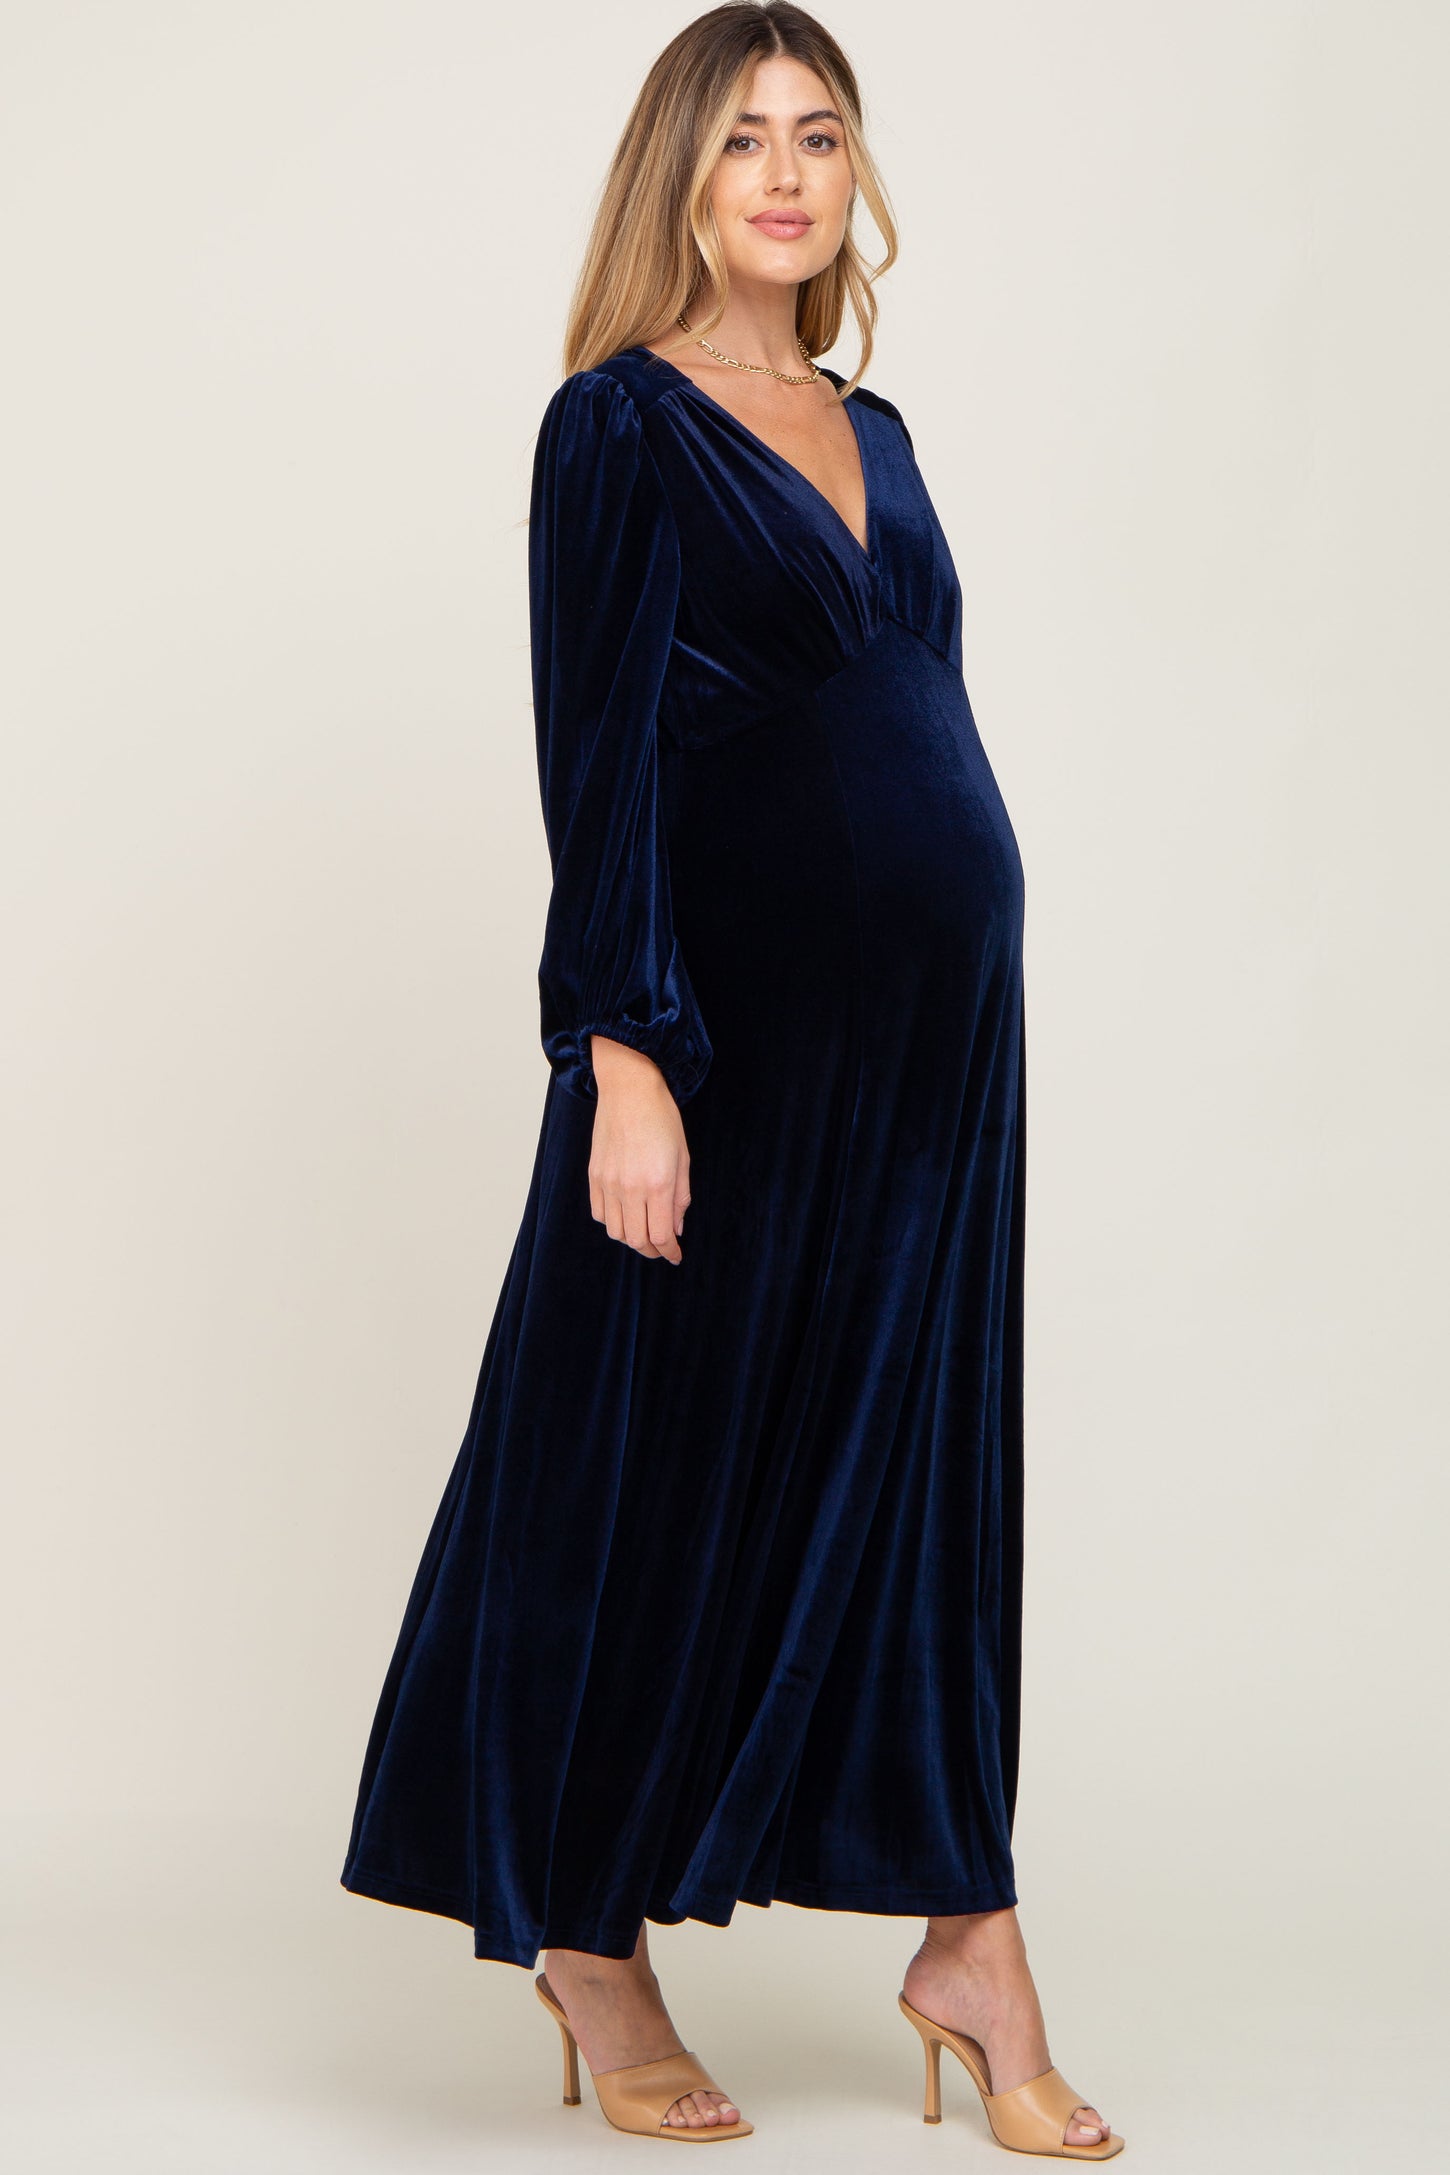 Navy Velvet Maternity Midi Dress